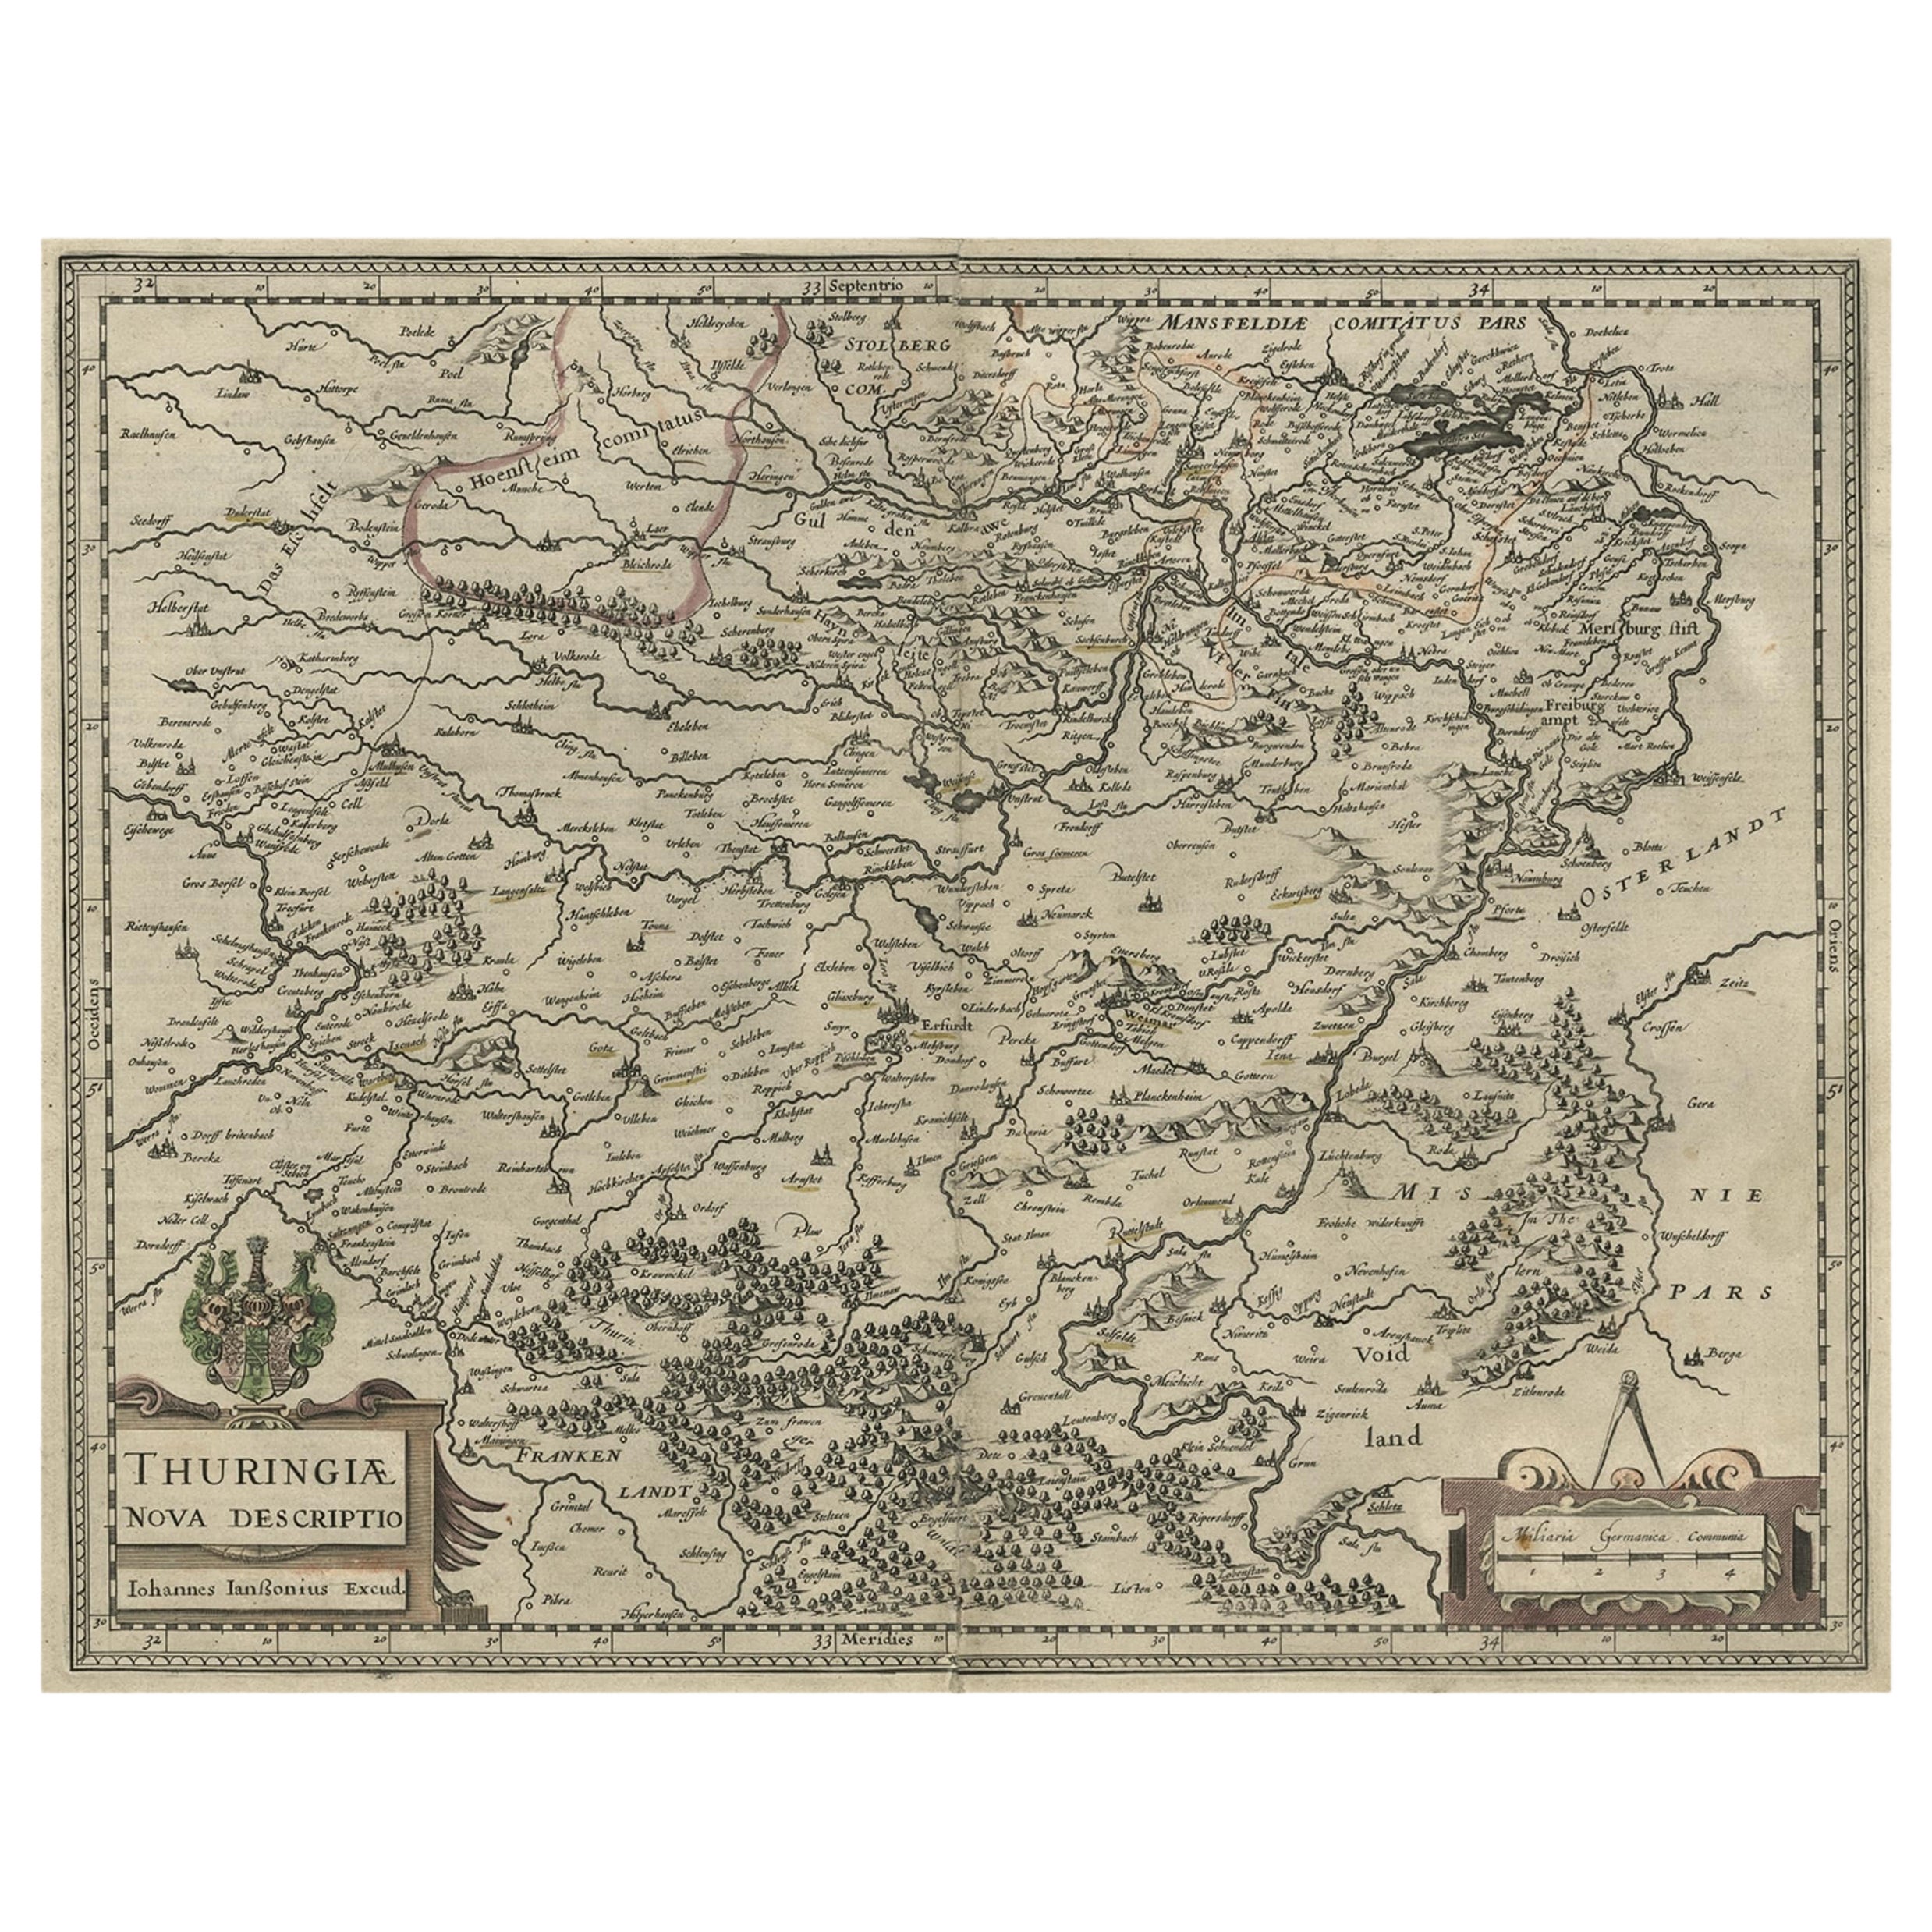 Carte originale et détaillée de Thuringia, Allemagne, par J. Janssonius, vers 1650